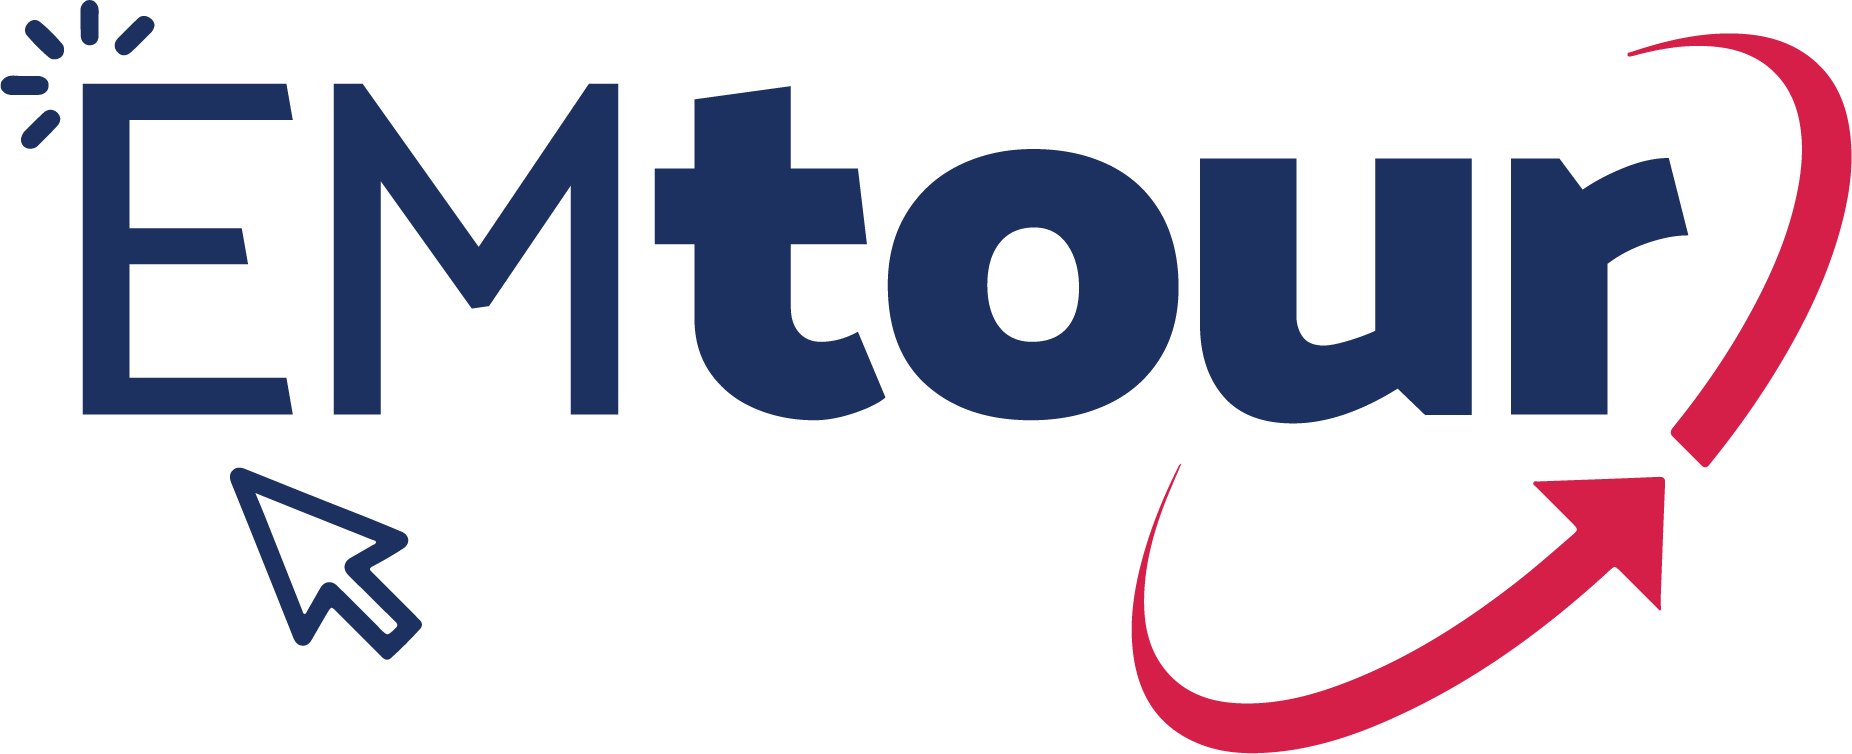 EMTour logo